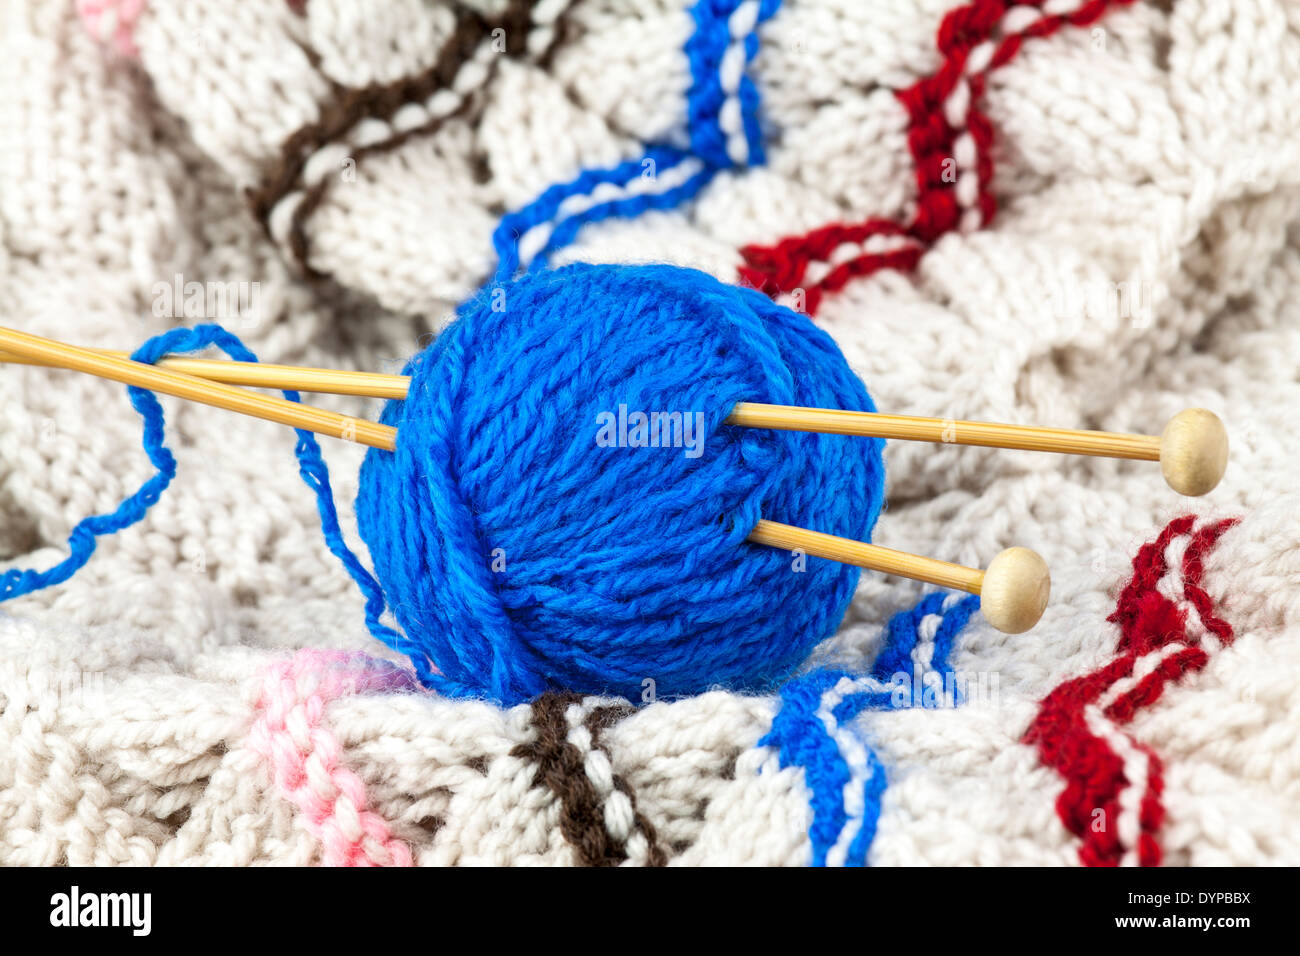 Pelote de laine bleu avec aiguille à tricoter Banque D'Images